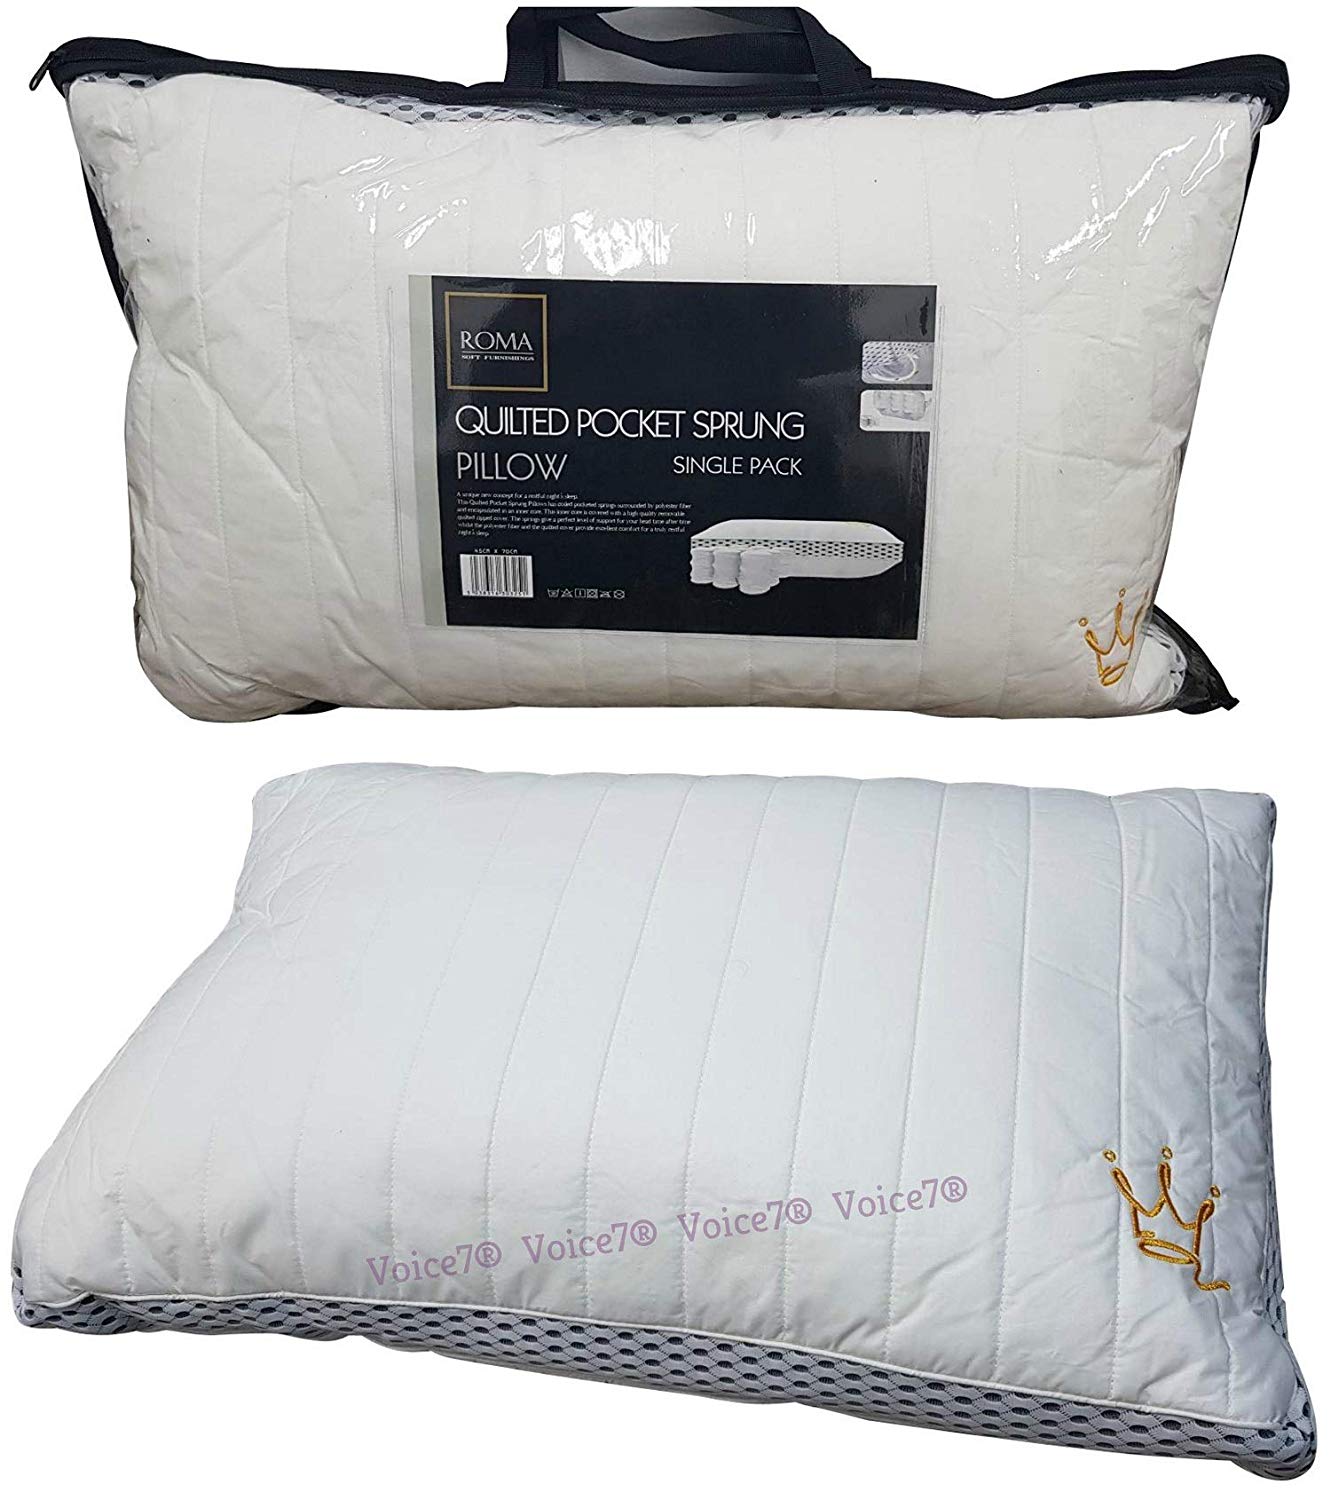 sprung pillows uk